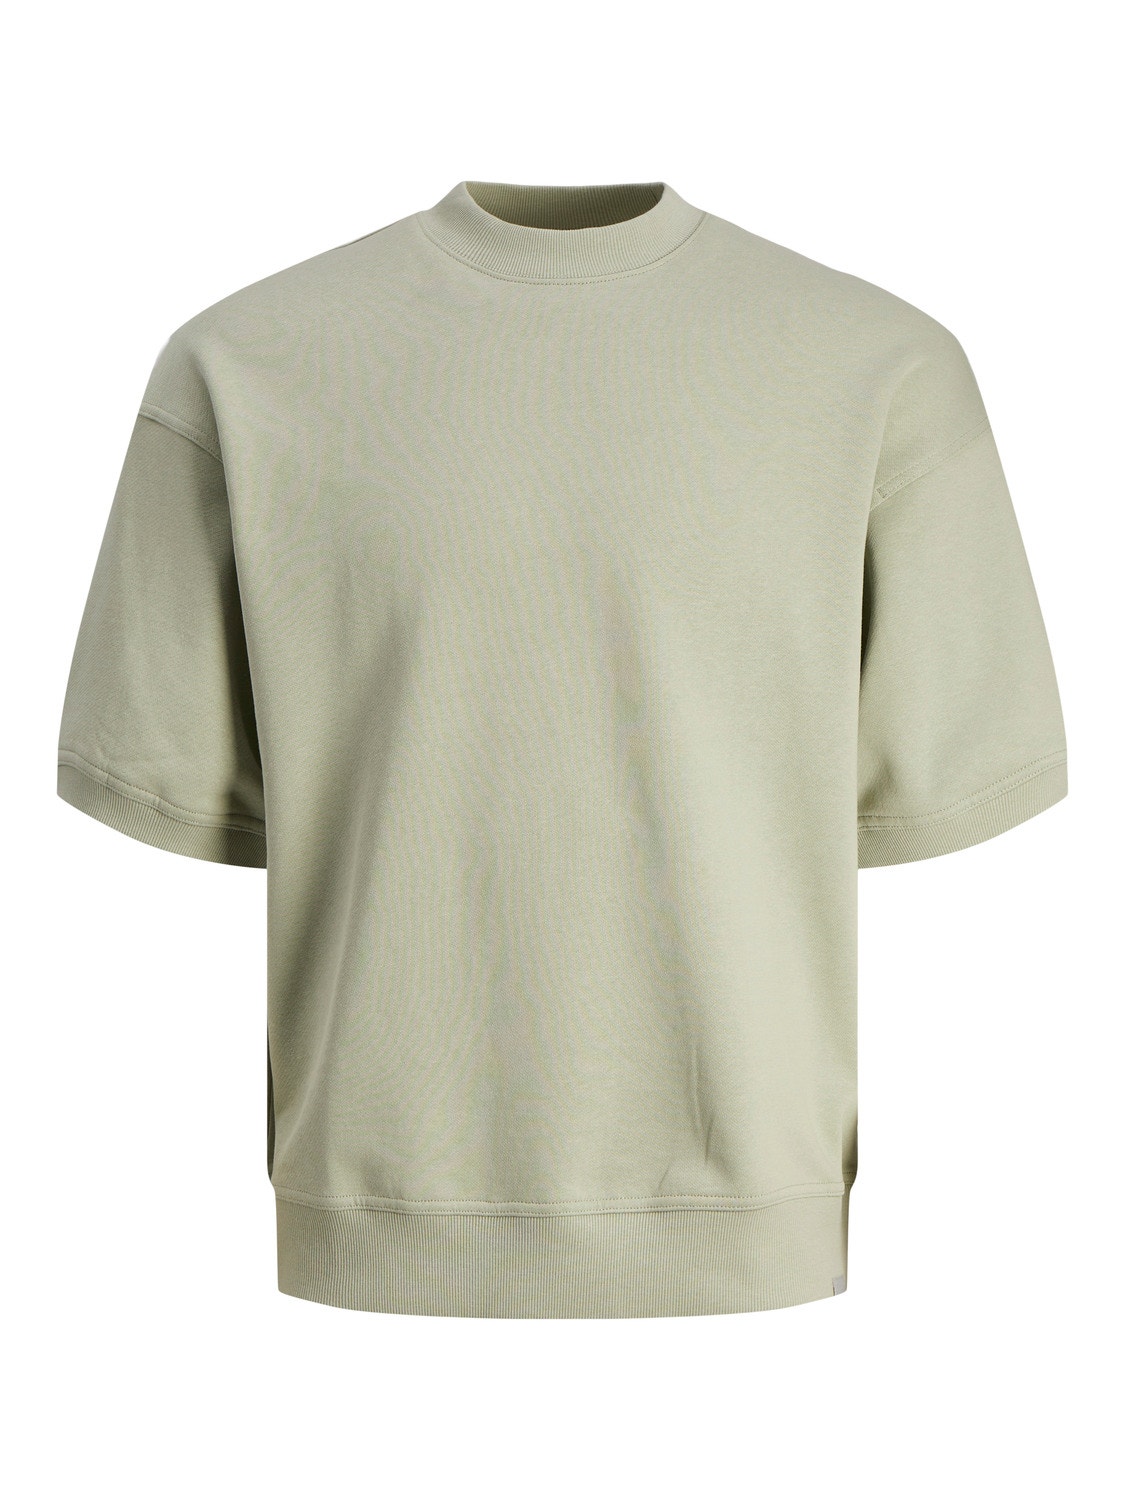 Jack & Jones Plain Crew neck Sweatshirt -Desert Sage - 12255219